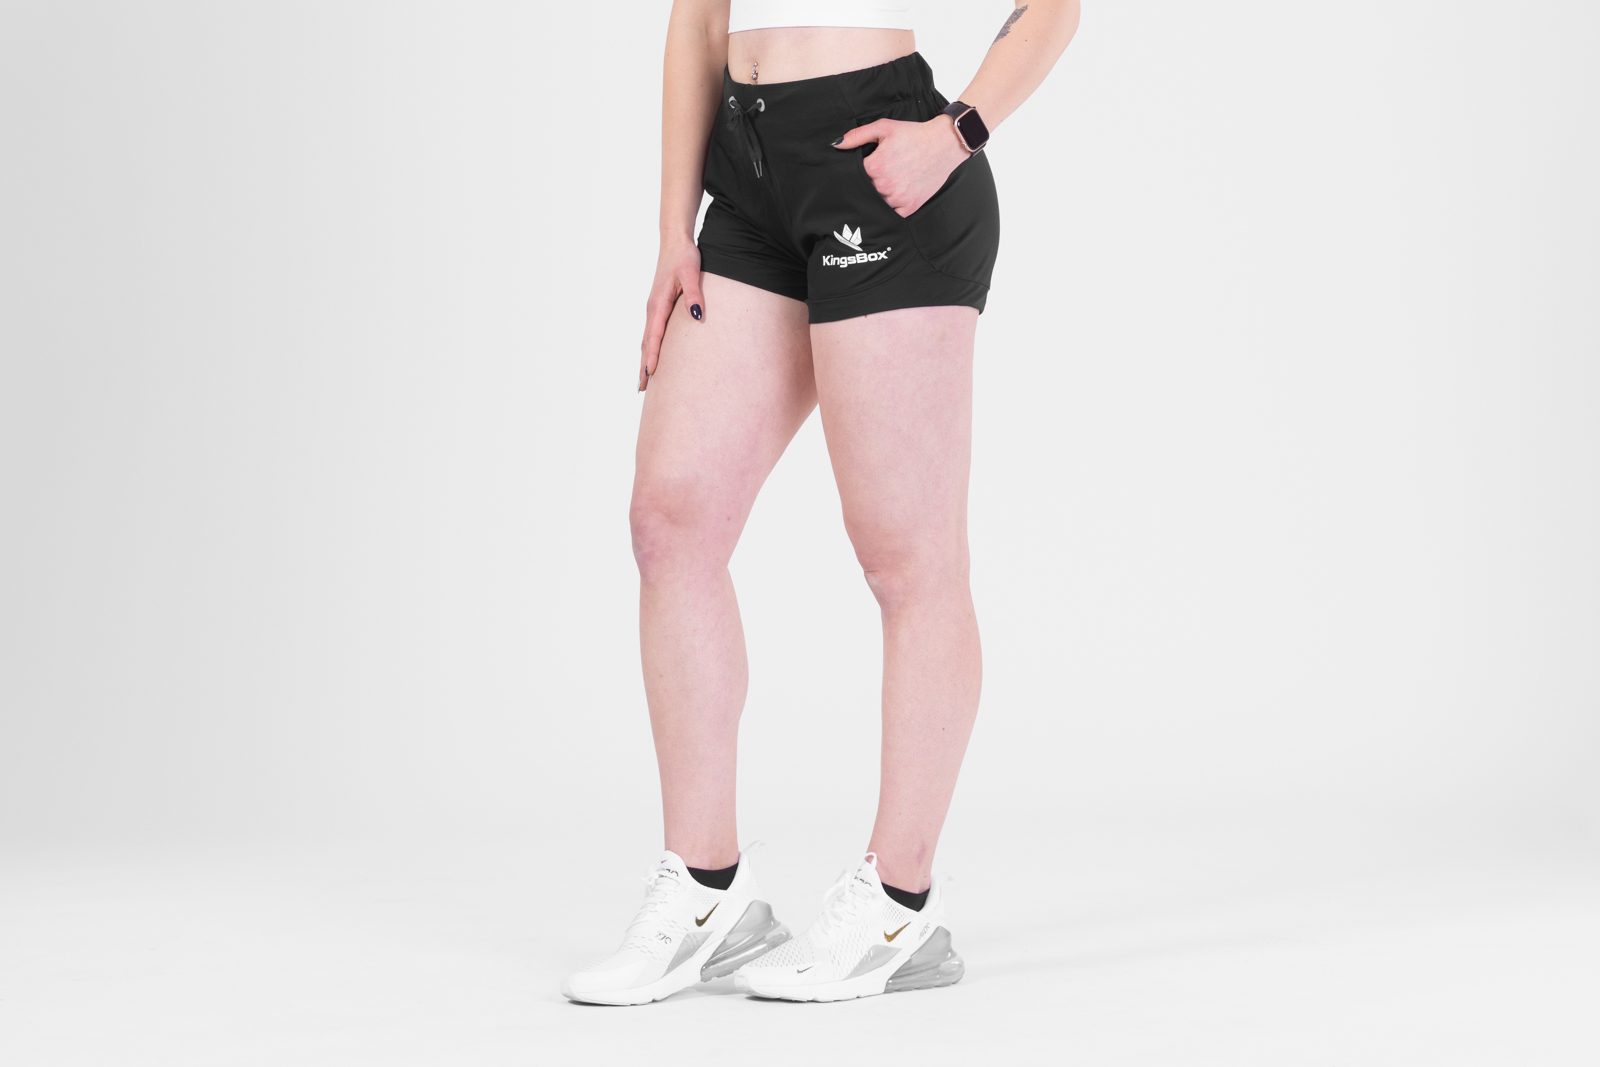 KingsBox Workout shorts